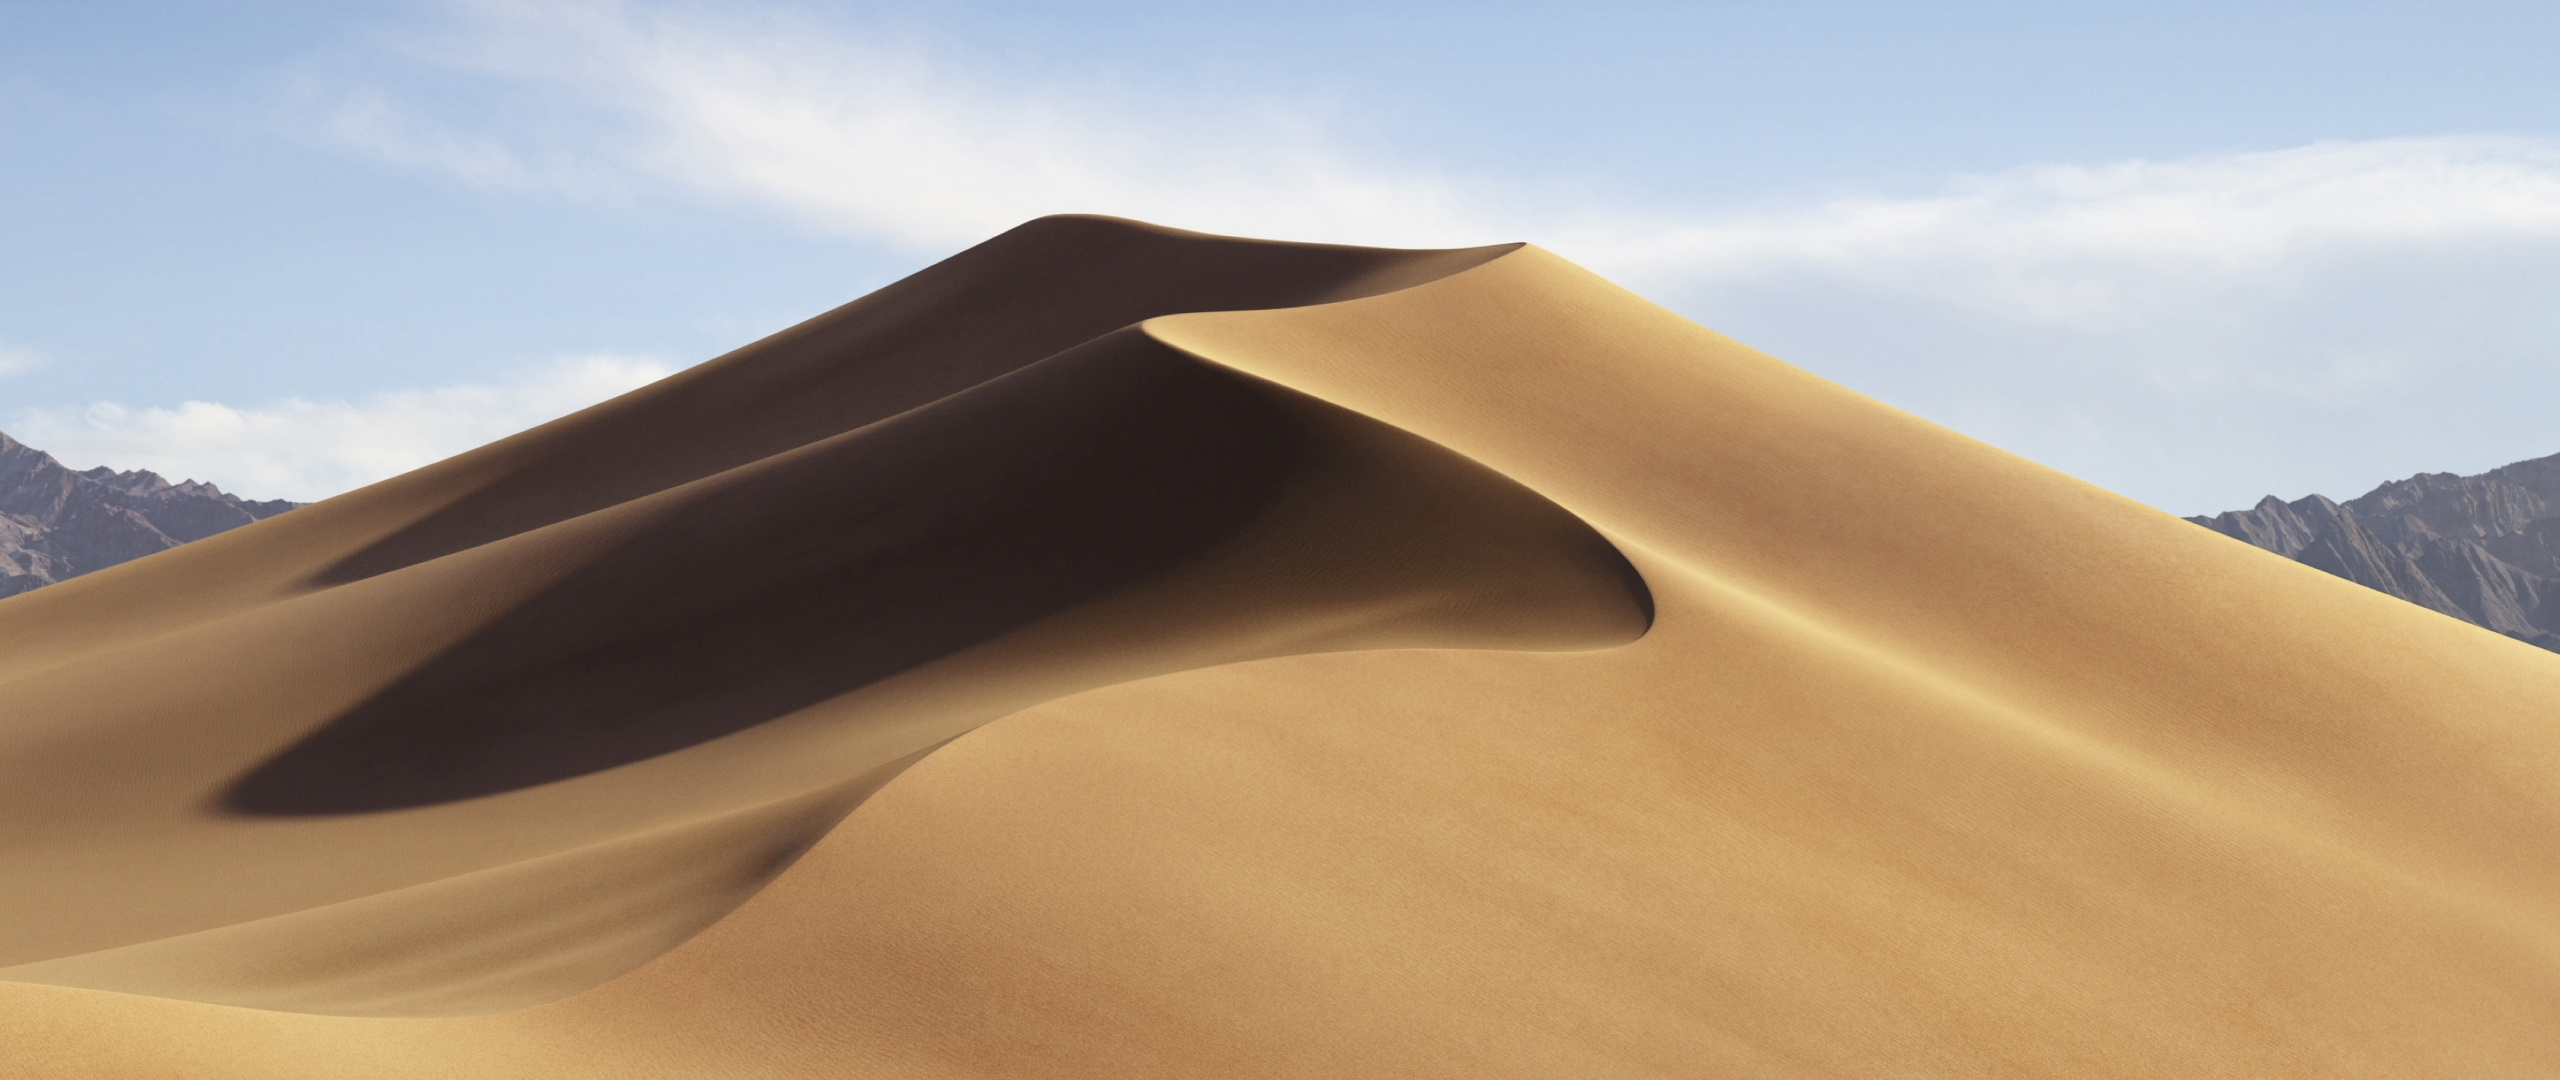 Mojave Desert, Dune, Sand, Hot Day, Wallpaper - Macos Mojave - 2560x1080  Wallpaper 